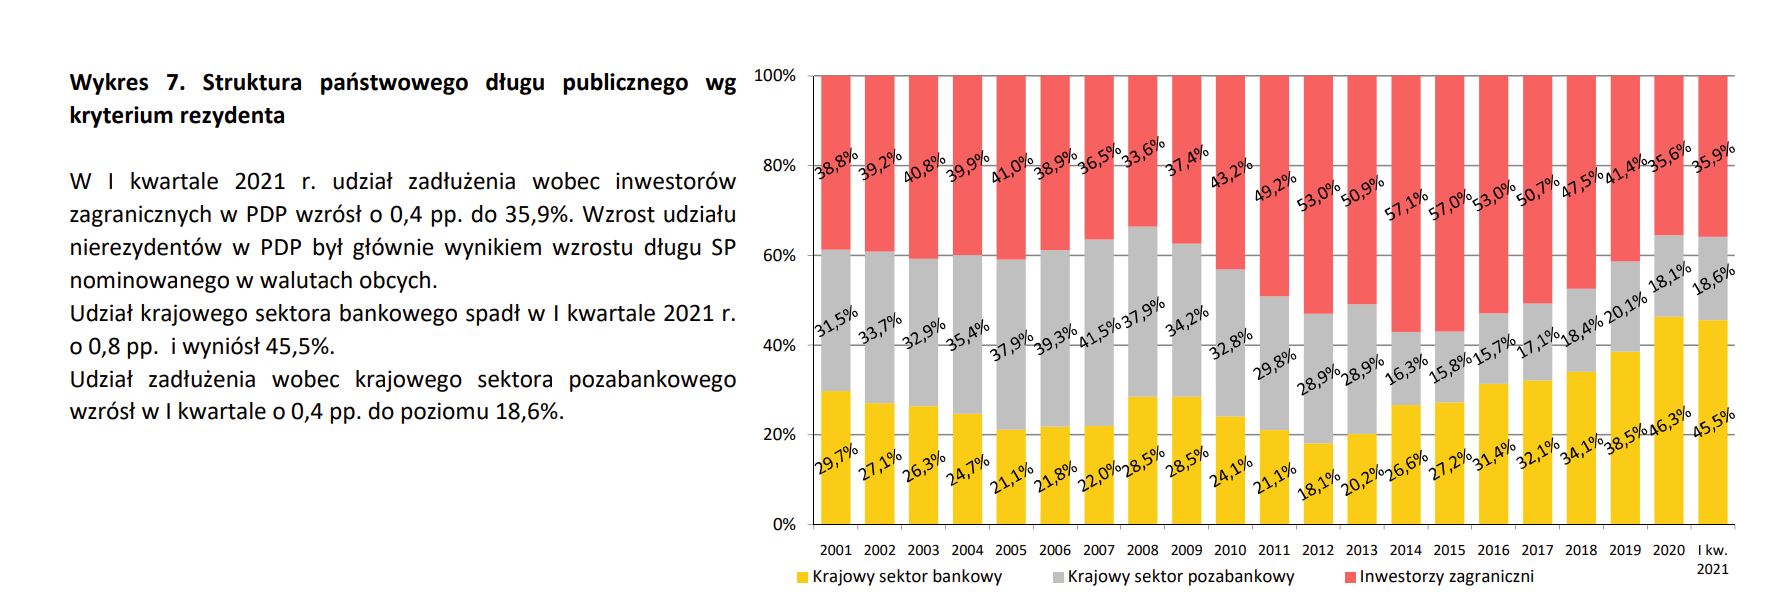 Structure de la dette polonaise